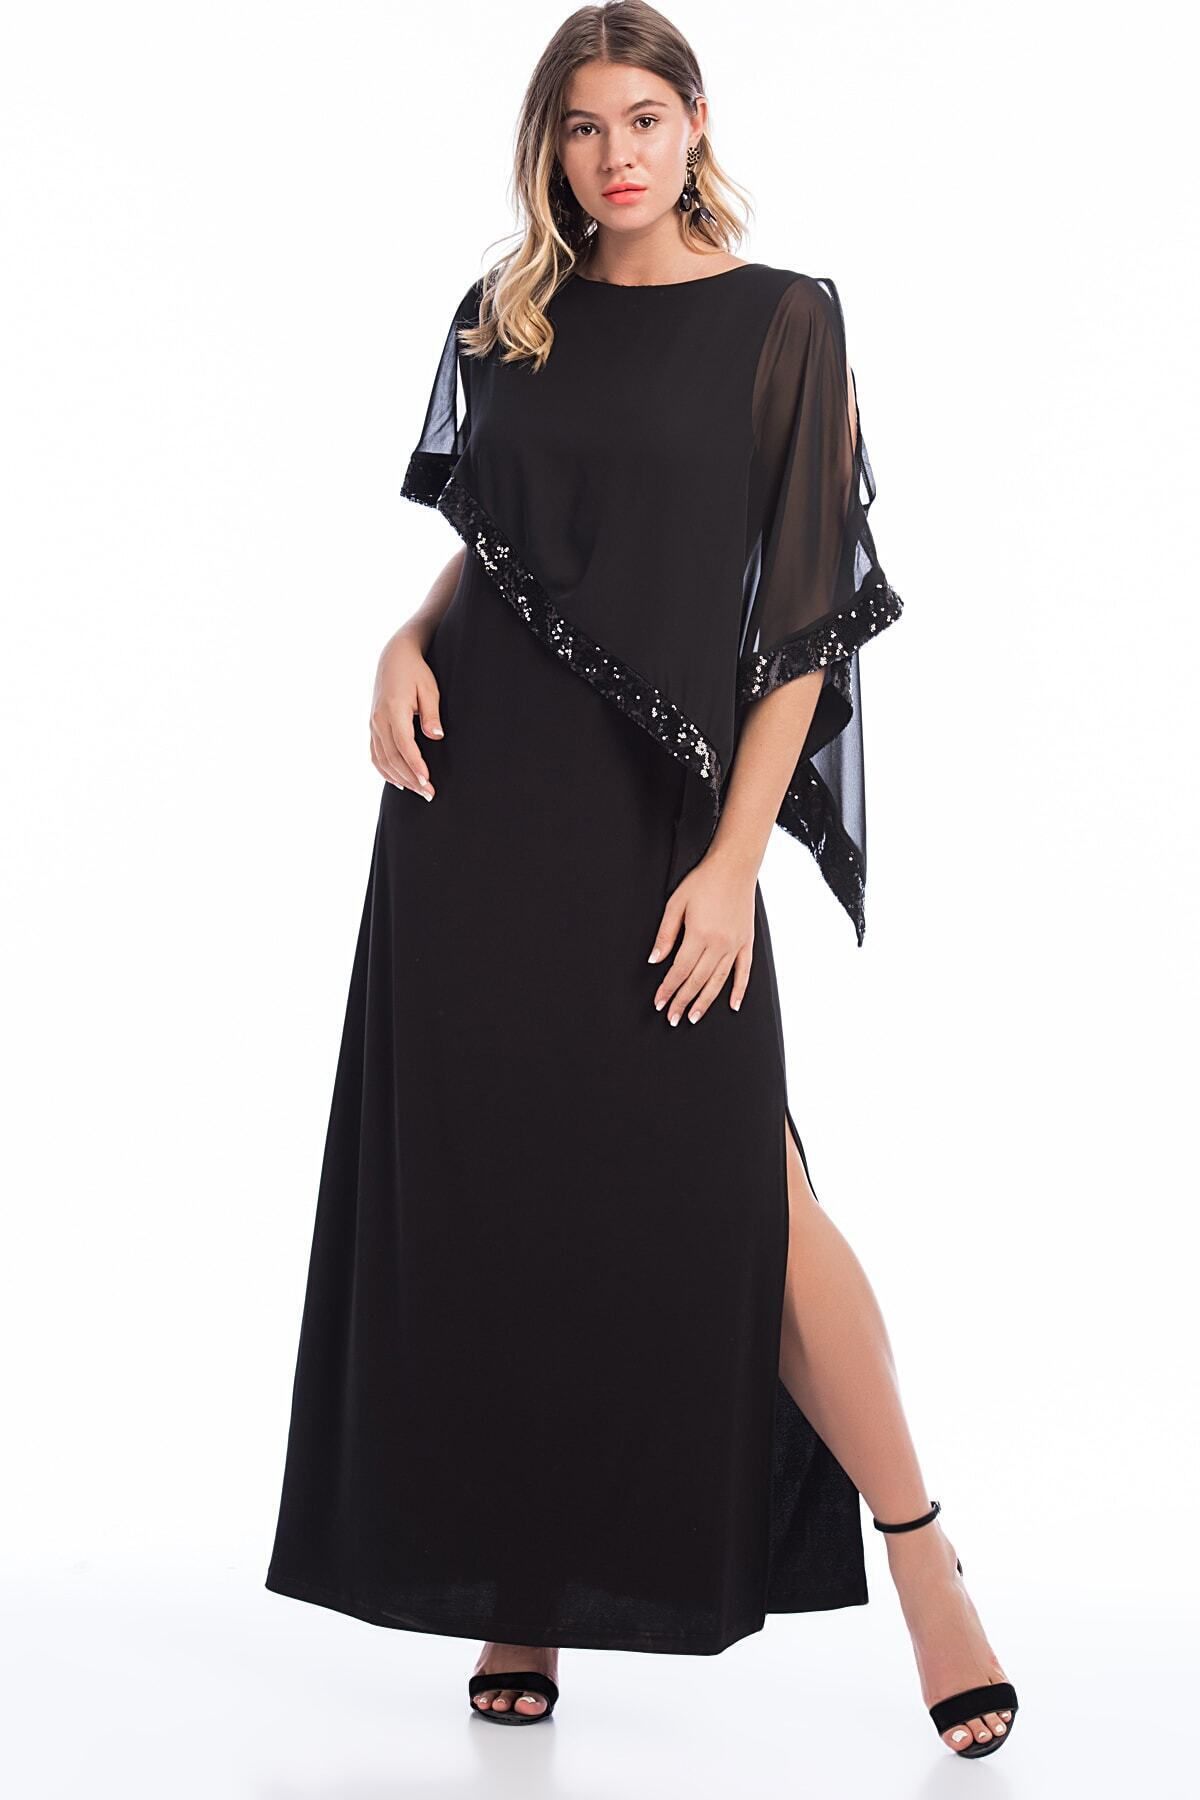 Şans Kadın Büyük Beden Siyah Payet Işli Elbise 65n14379